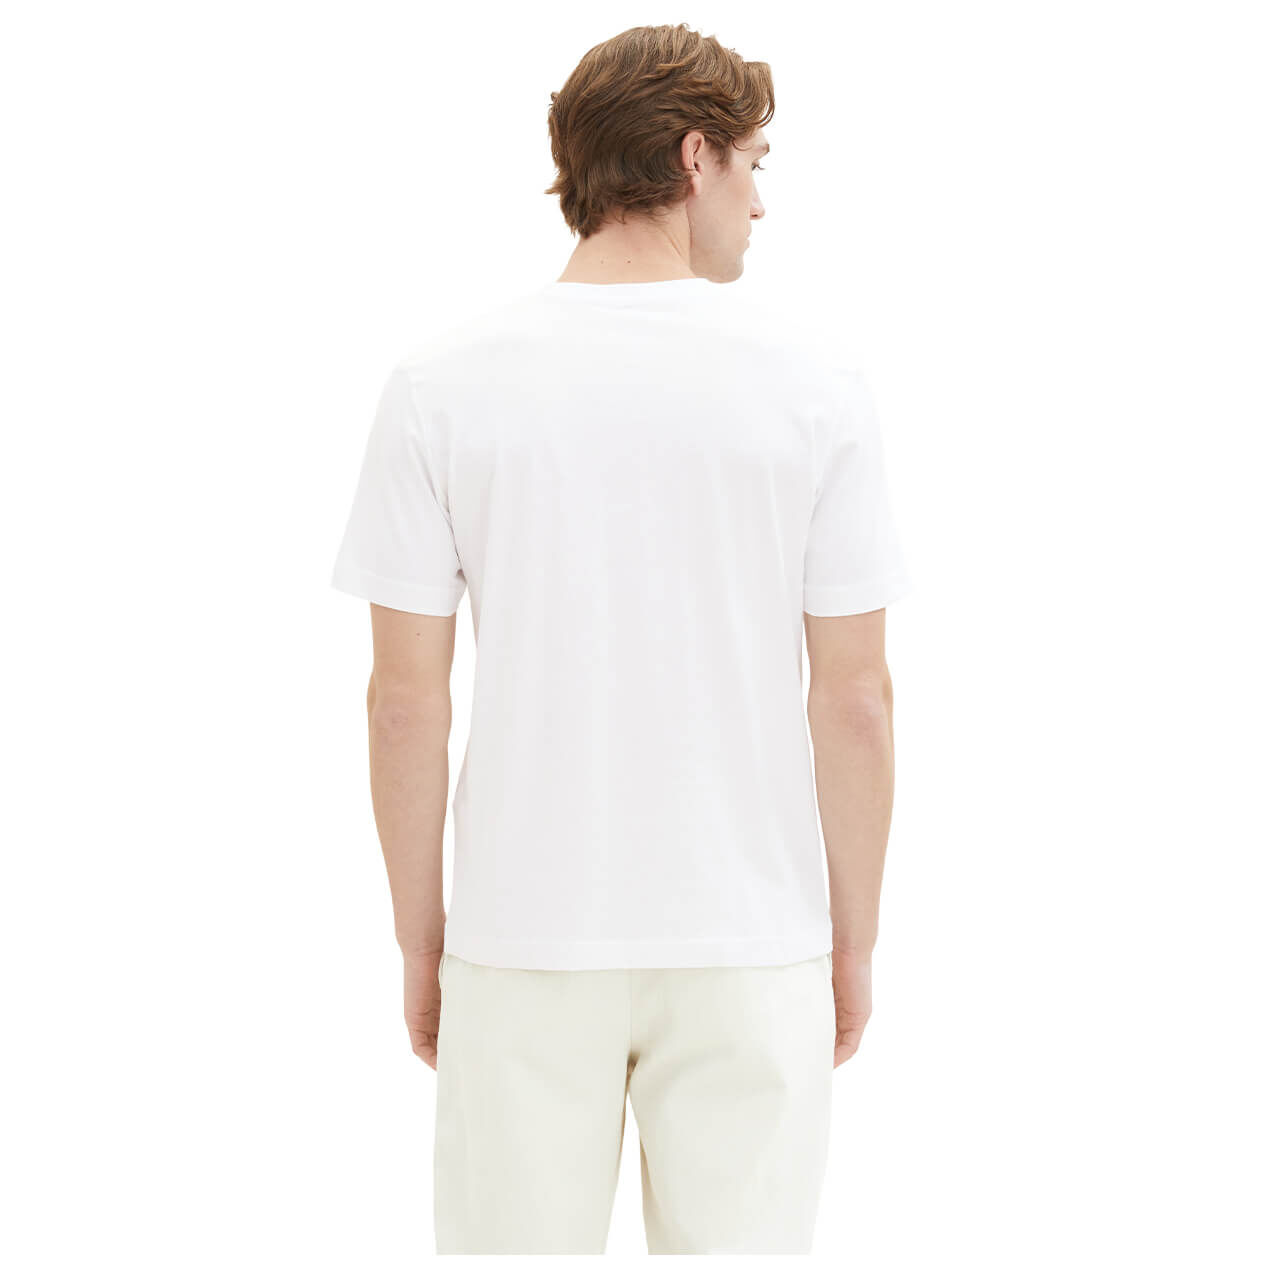 Tom Tailor Herren T-Shirts smart white